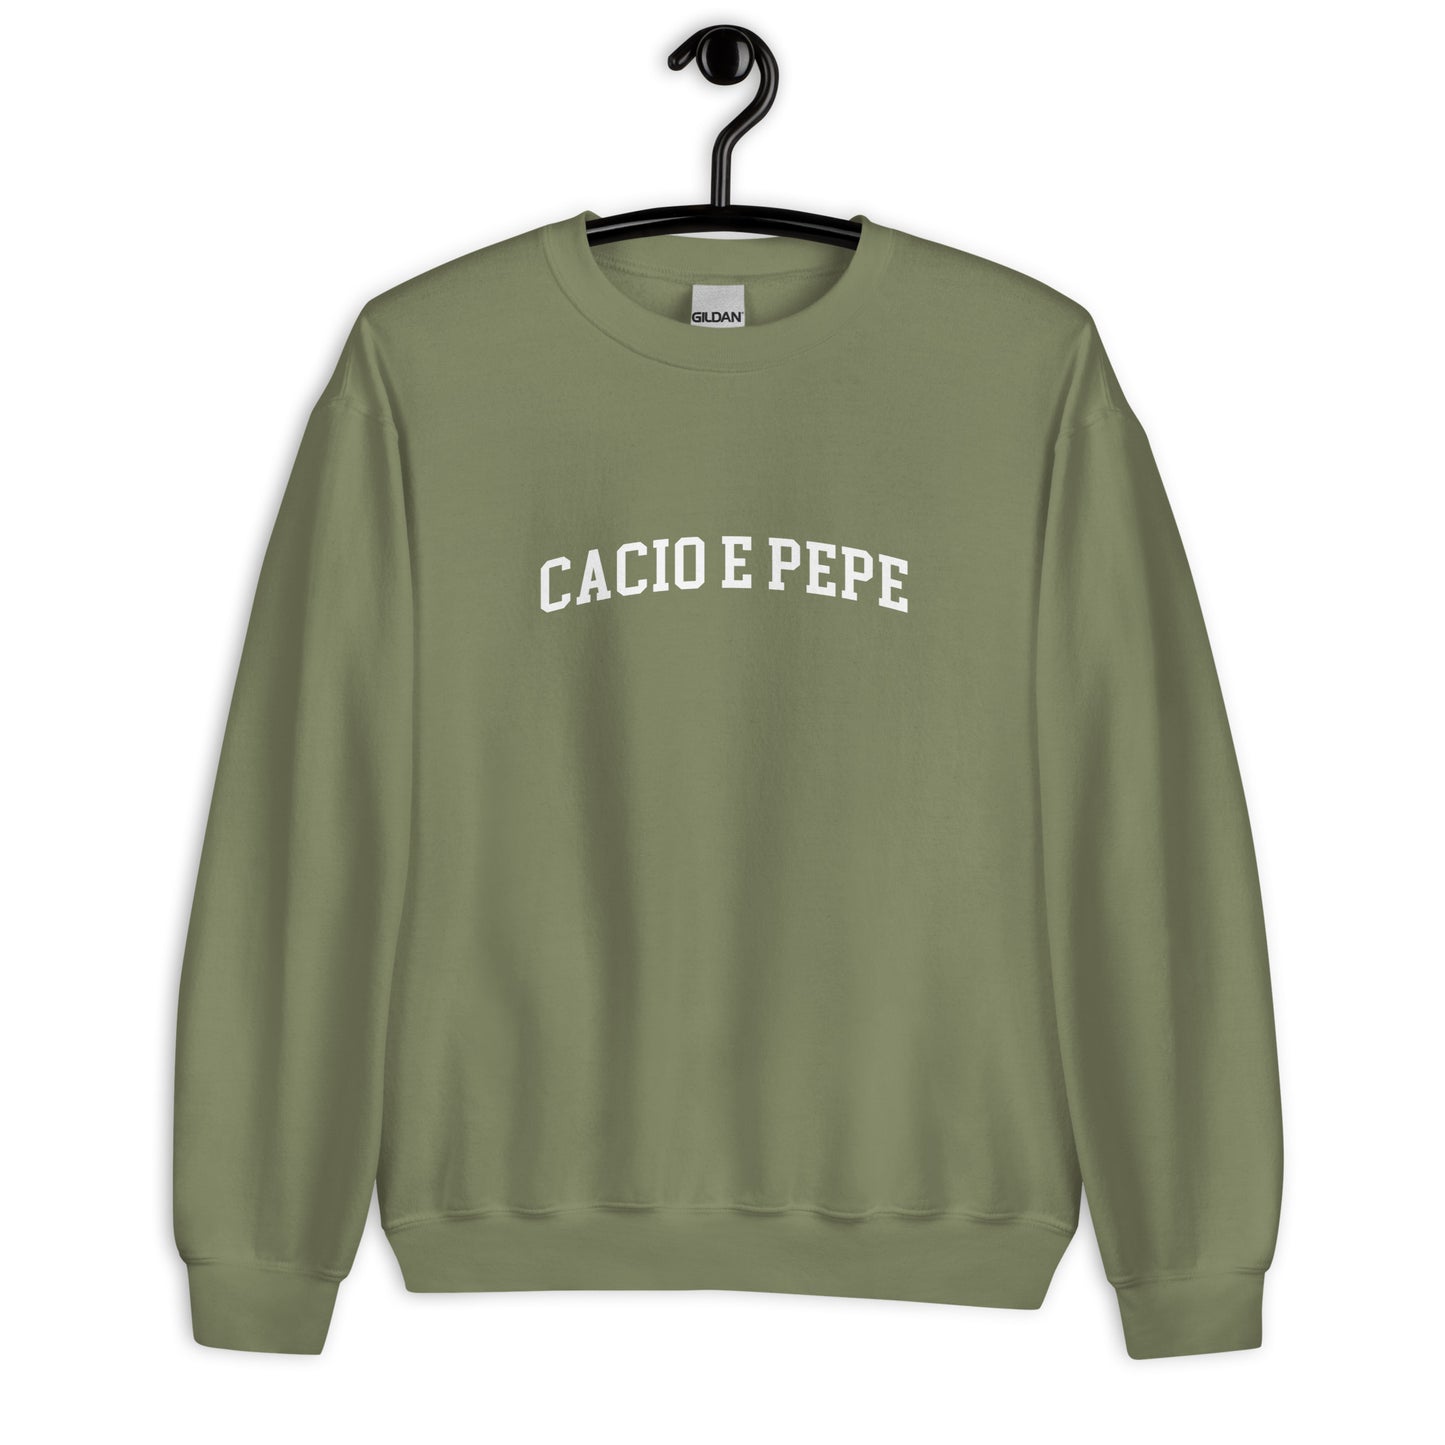 Cacio E Pepe Sweatshirt - Arched Font